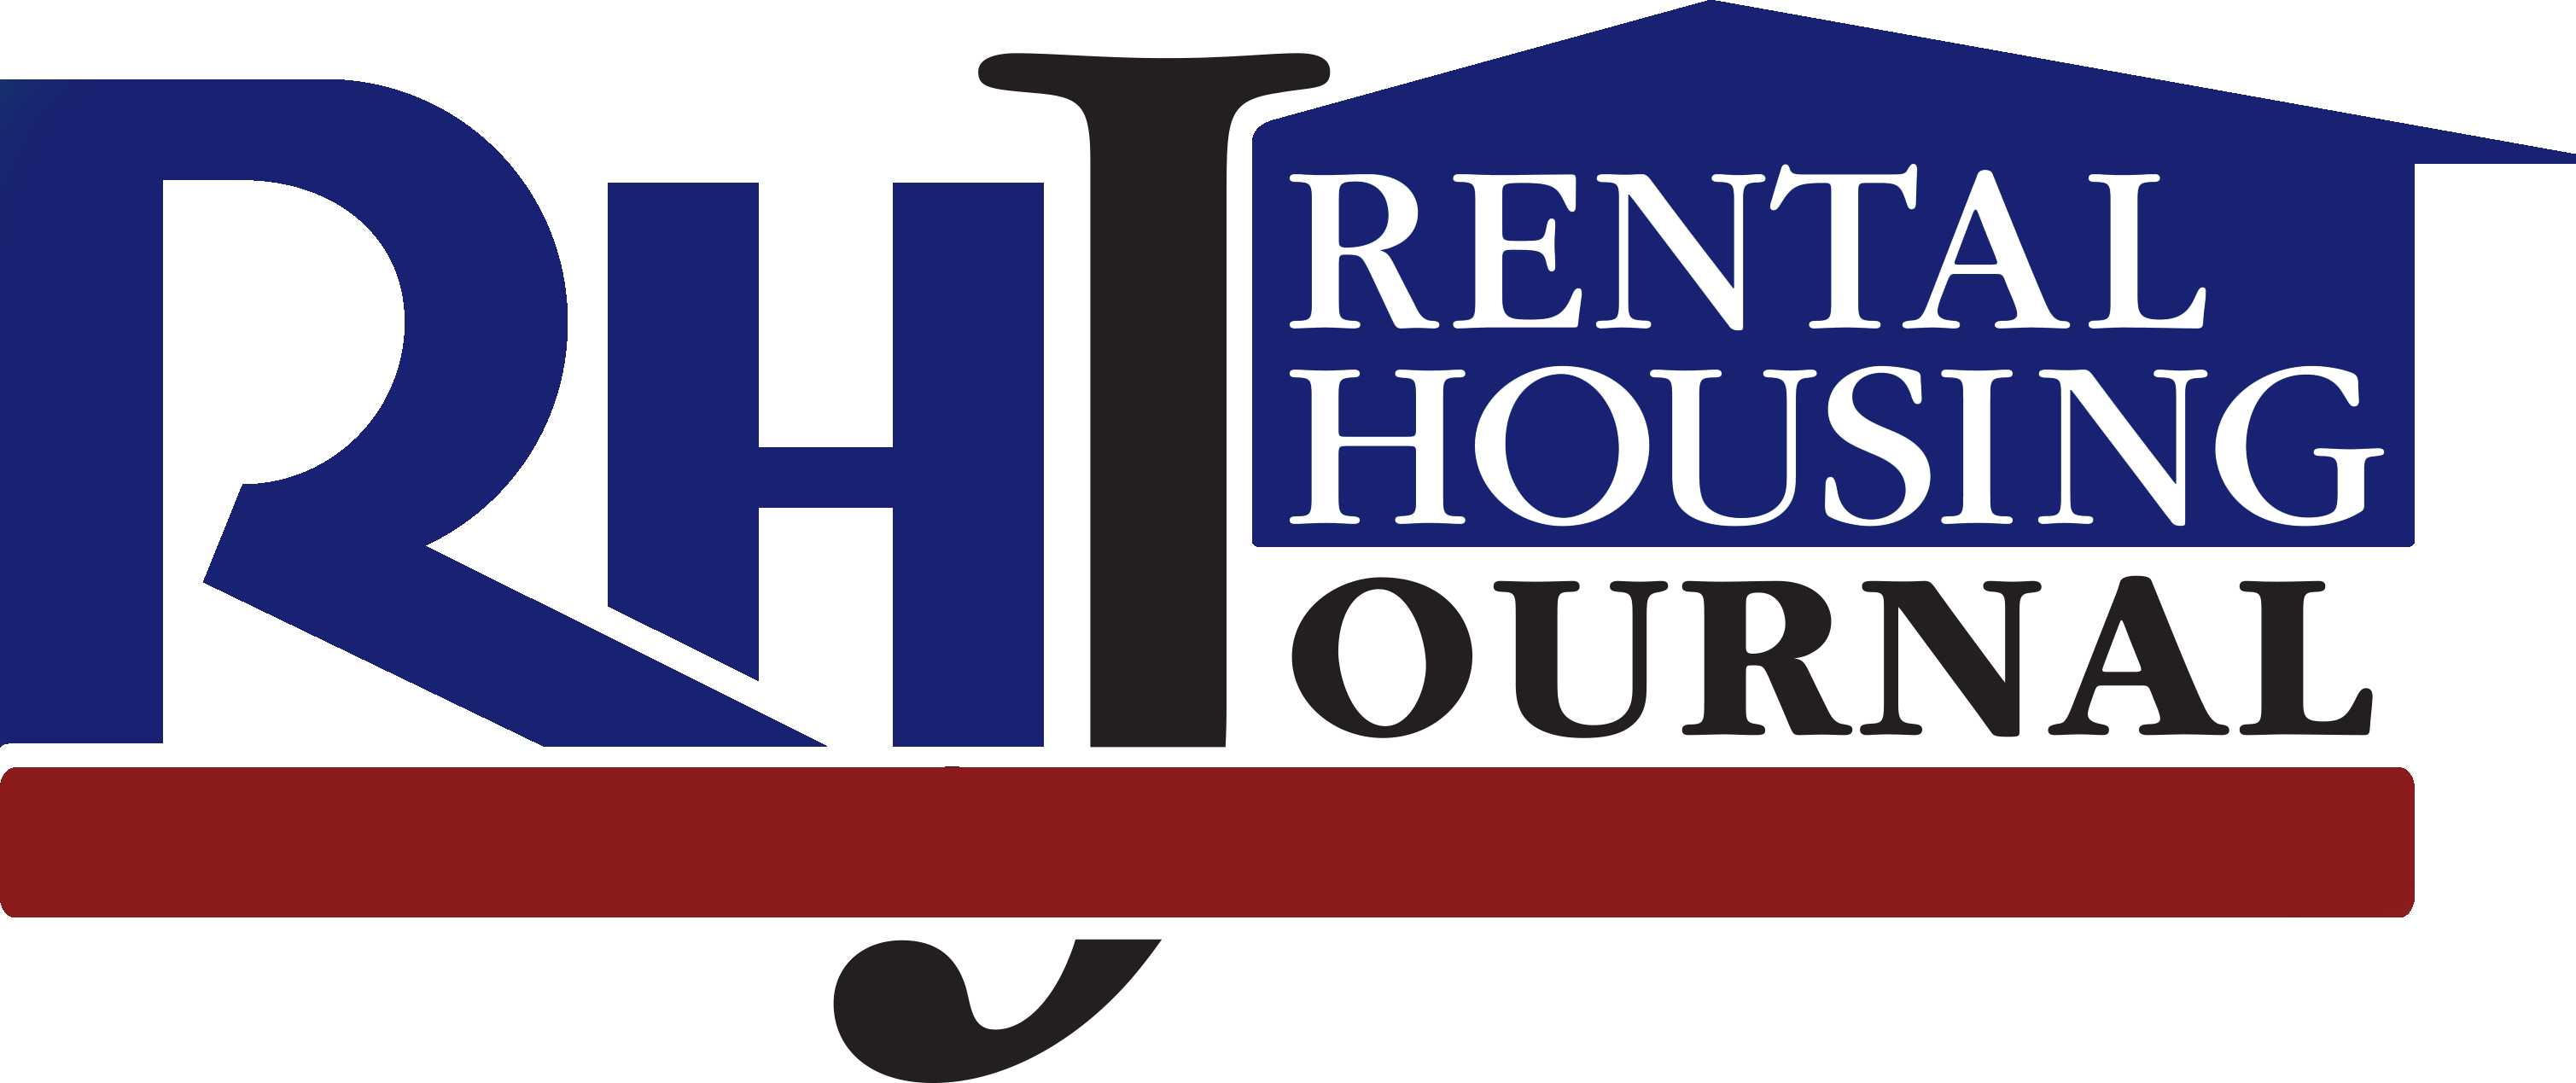 Rental Housing Journal logo